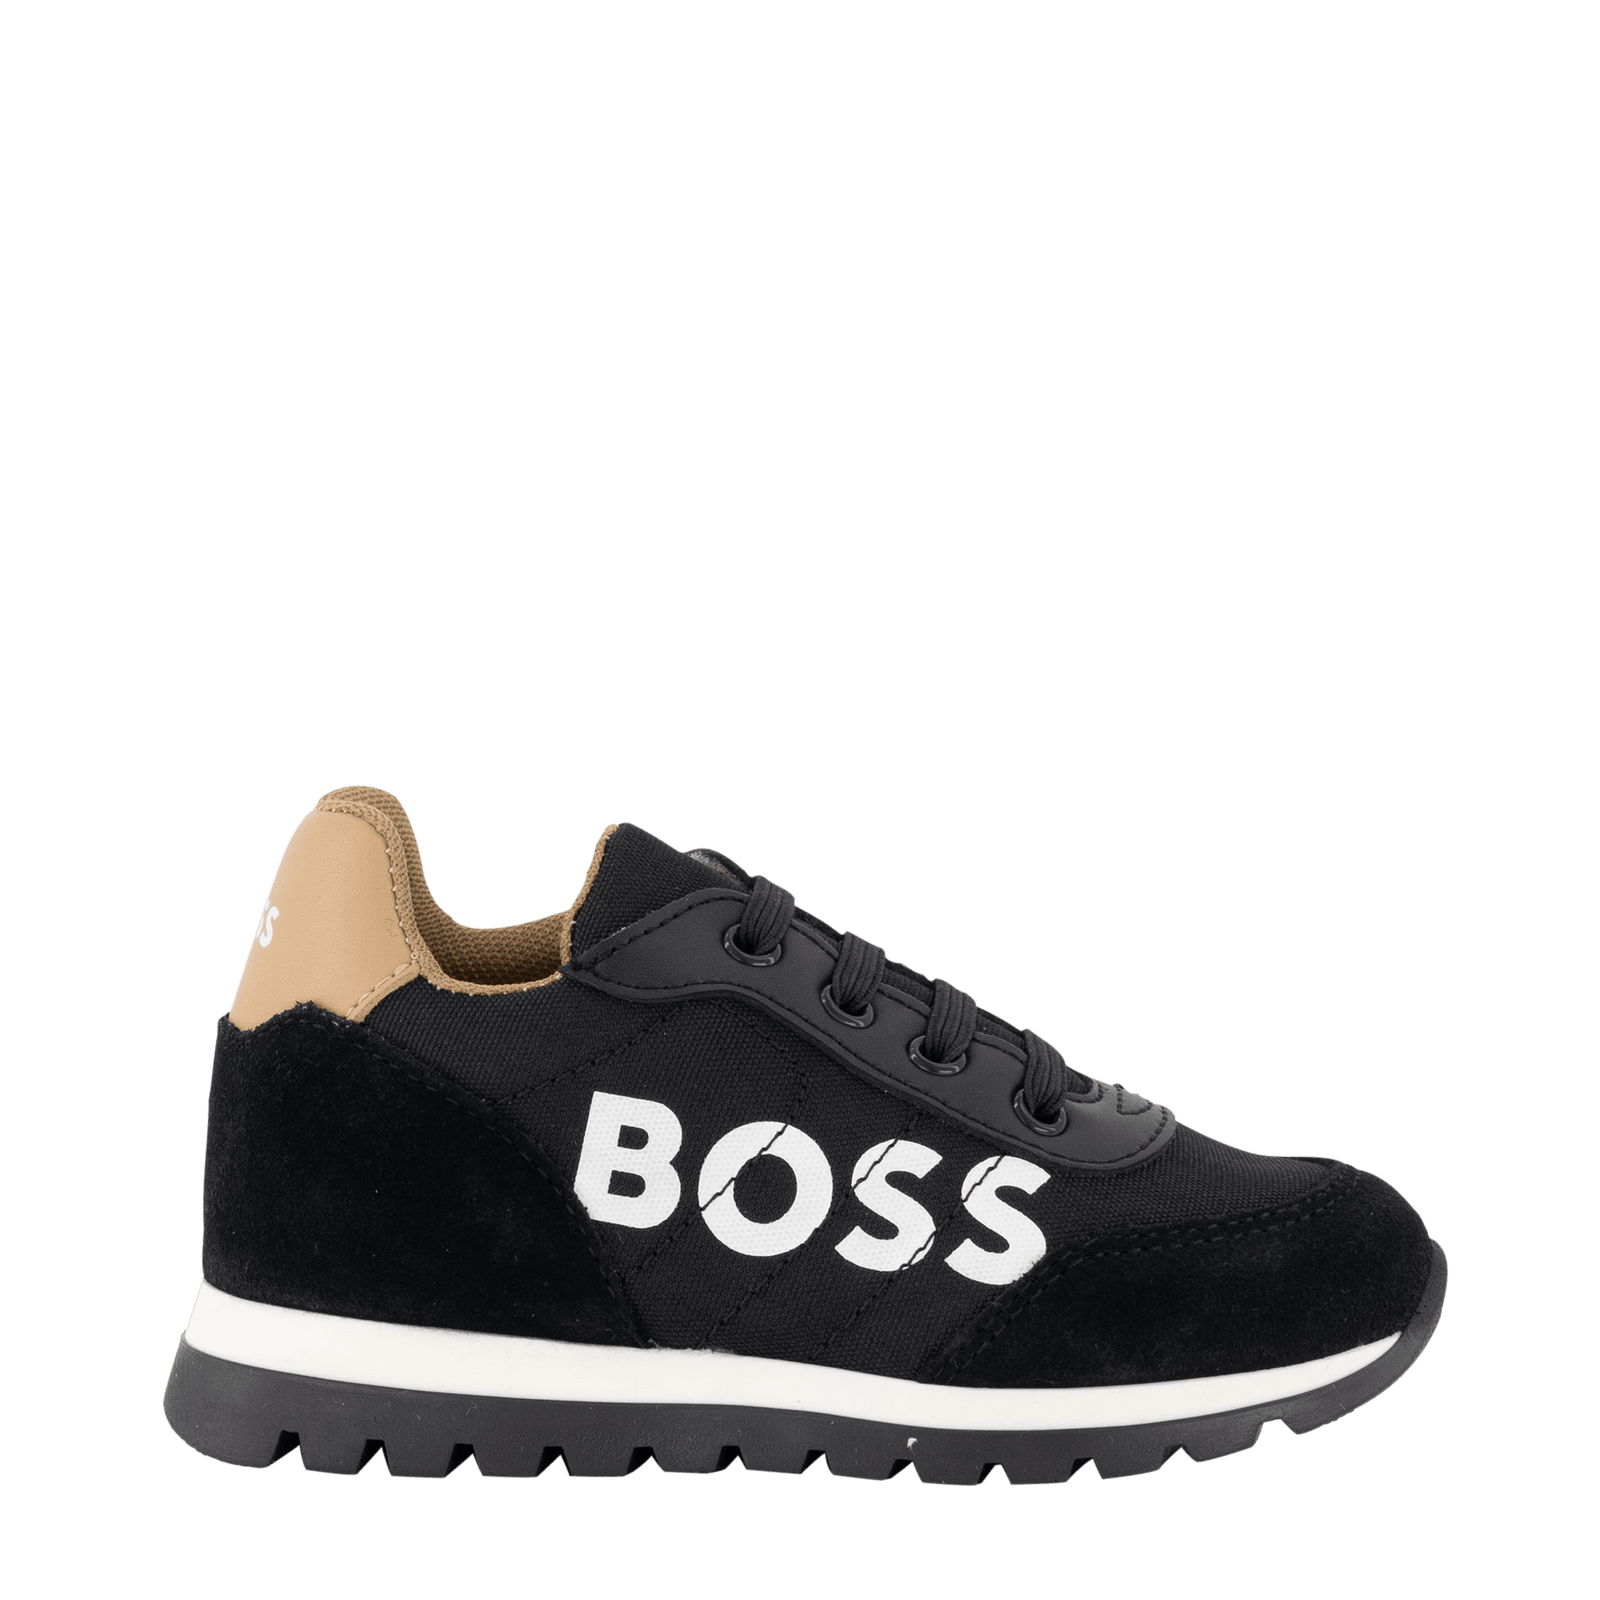 Boss Kids Boys Sneakers Black